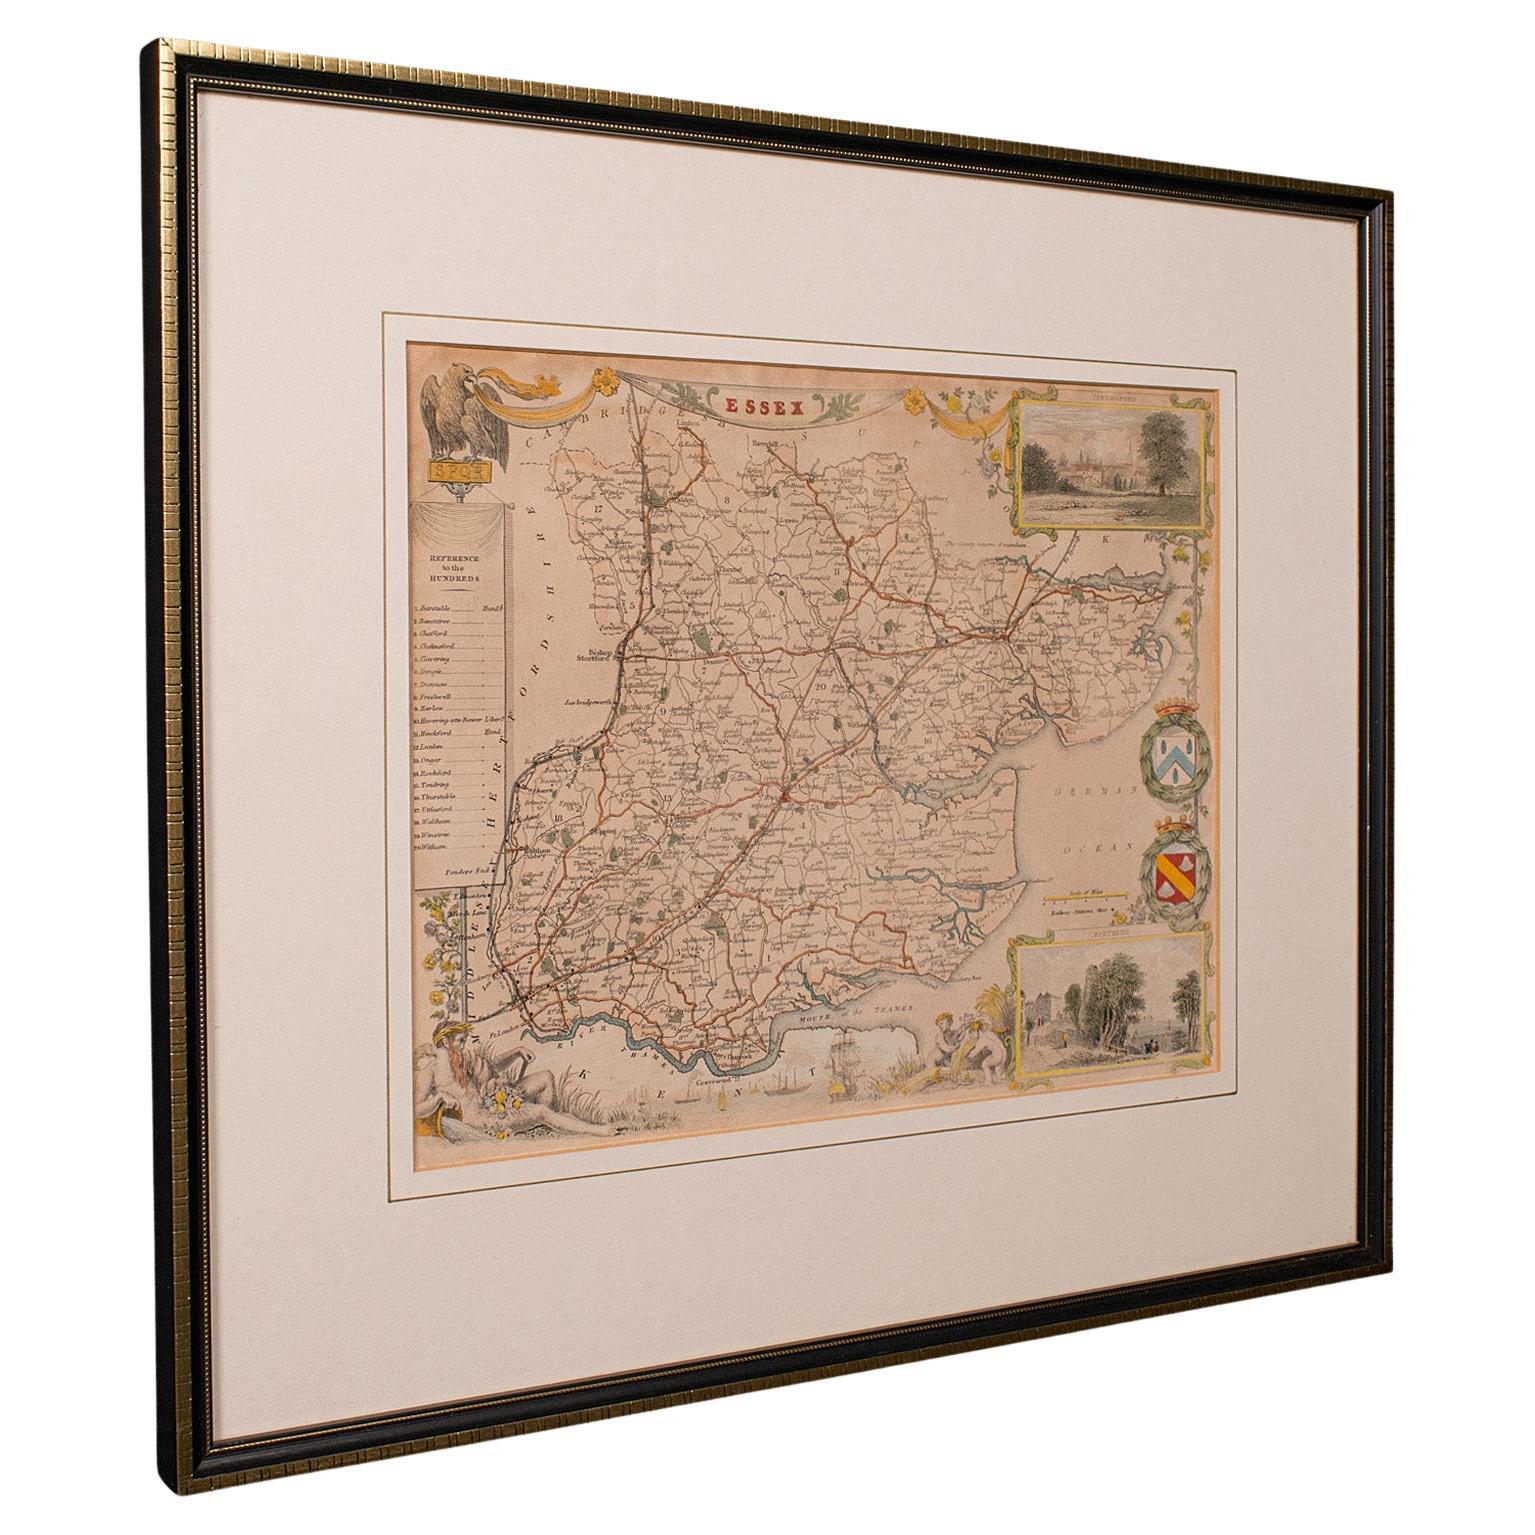 Carte ancienne du County, Essex, anglaise, encadrée, intérêt cartographique, victorienne